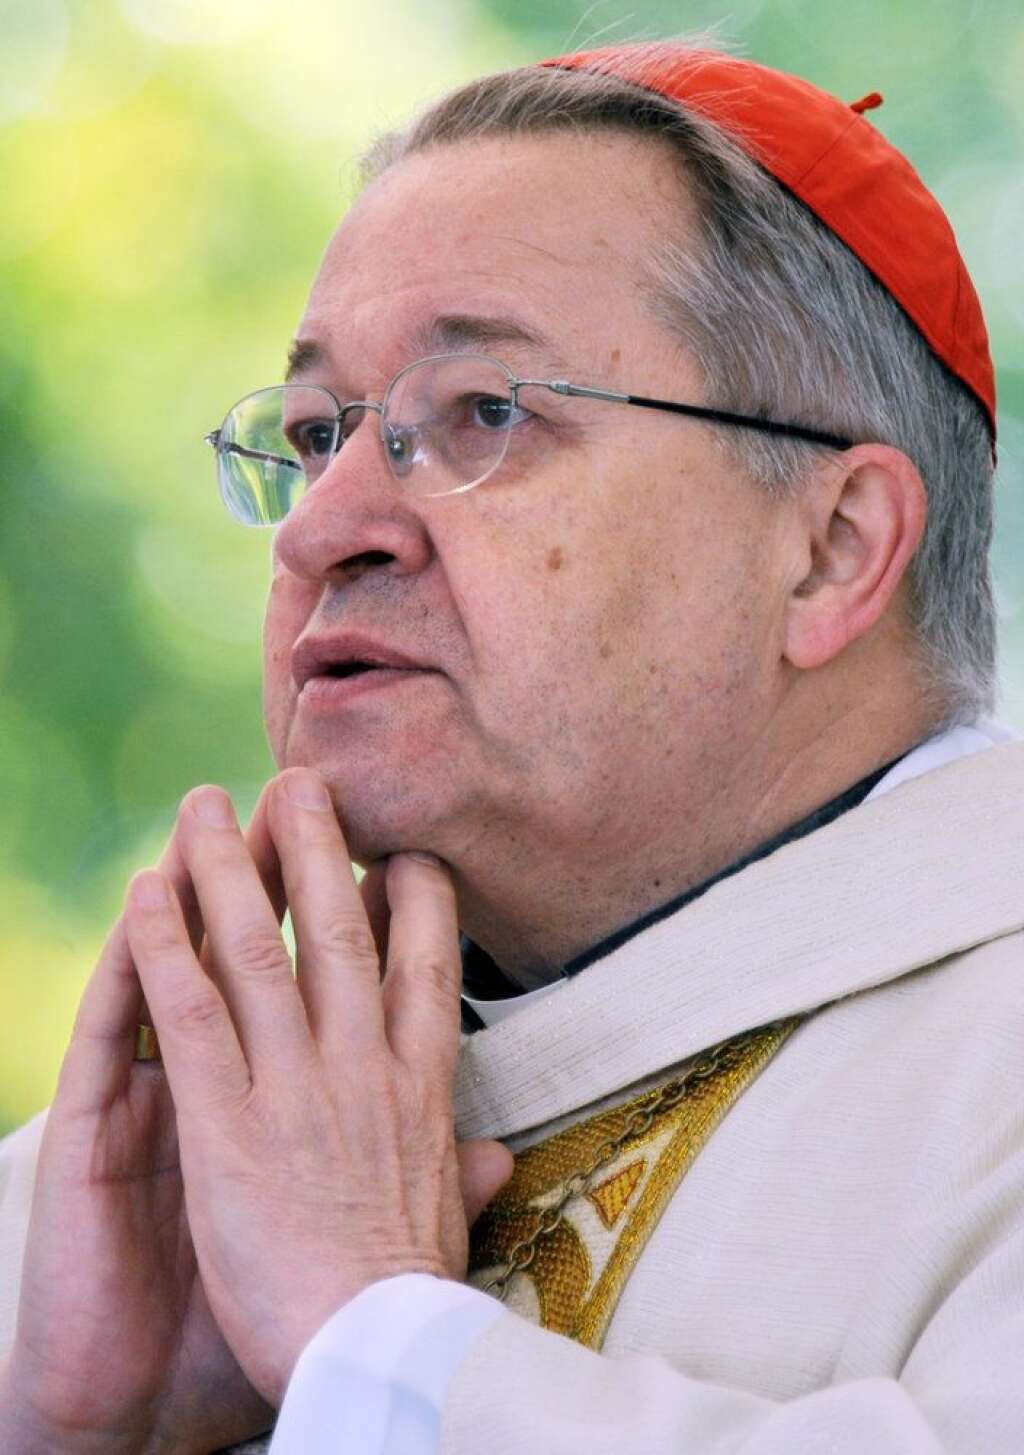 15 août 2012: une prière polémique pour la famille - Les évêques de France saisissent l'occasion de l'Assomption pour appeler à une prière exprimant la solidarité avec les personnes touchées par la crise, mais aussi l'attachement à la famille. L'association LGBT crie à l'homophobie. "Ce n'est un scoop pour personne que de dire que l'Eglise s'oppose au mariage homosexuel", répond Mgr Bernard Podvin, porte-parole de la Conférence des évêques de France sur France Inter.  <strong>A RELIRE:</strong> <a href="http://www.huffingtonpost.fr/2012/08/15/video-actup-pastiche-la-priere-universelle-anti-gay-famille-cardinal-vingt-trois_n_1778019.html?1345026063&utm_hp_ref=france" target="_blank">Le pastiche provoc d'Act Up</a>